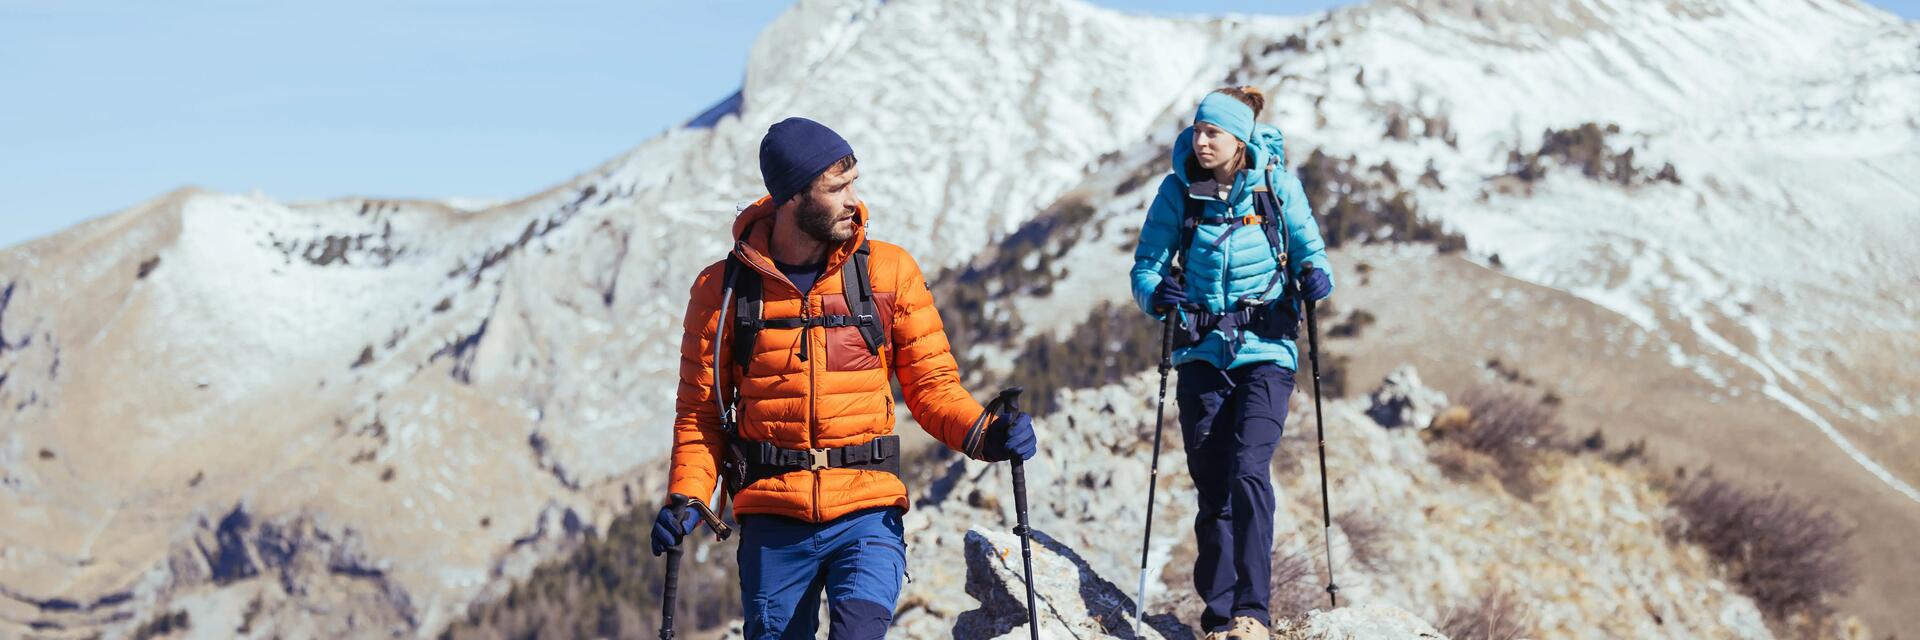 znajomi wędrujący z plecakami turystycznymi na plecach po górach w puchowych kurtkach trekkingowych